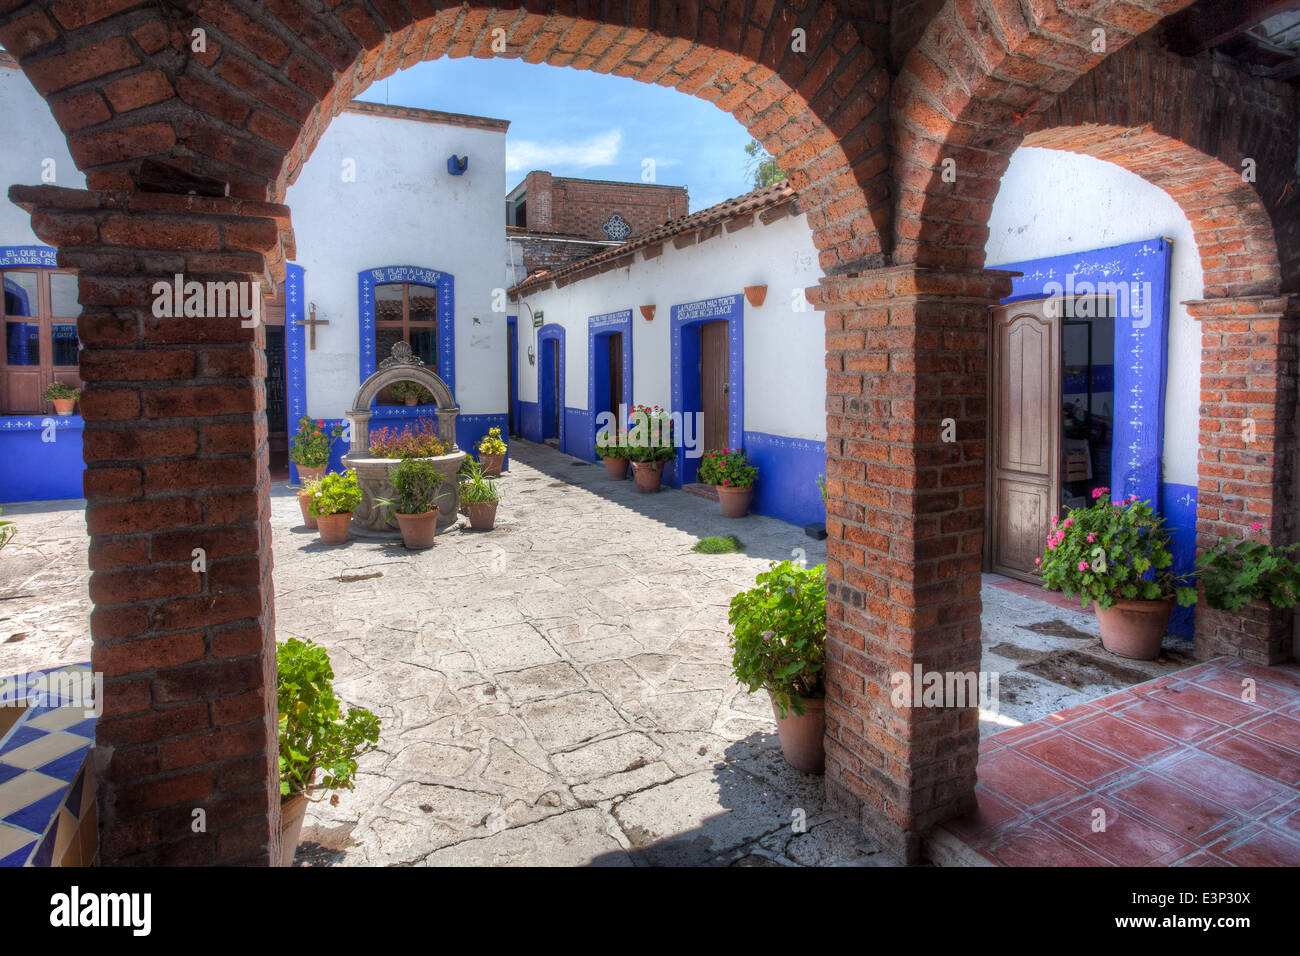 Arches and courtyard in the Hacienda Corralejo in Guanajuato, Mexico. Stock Photo